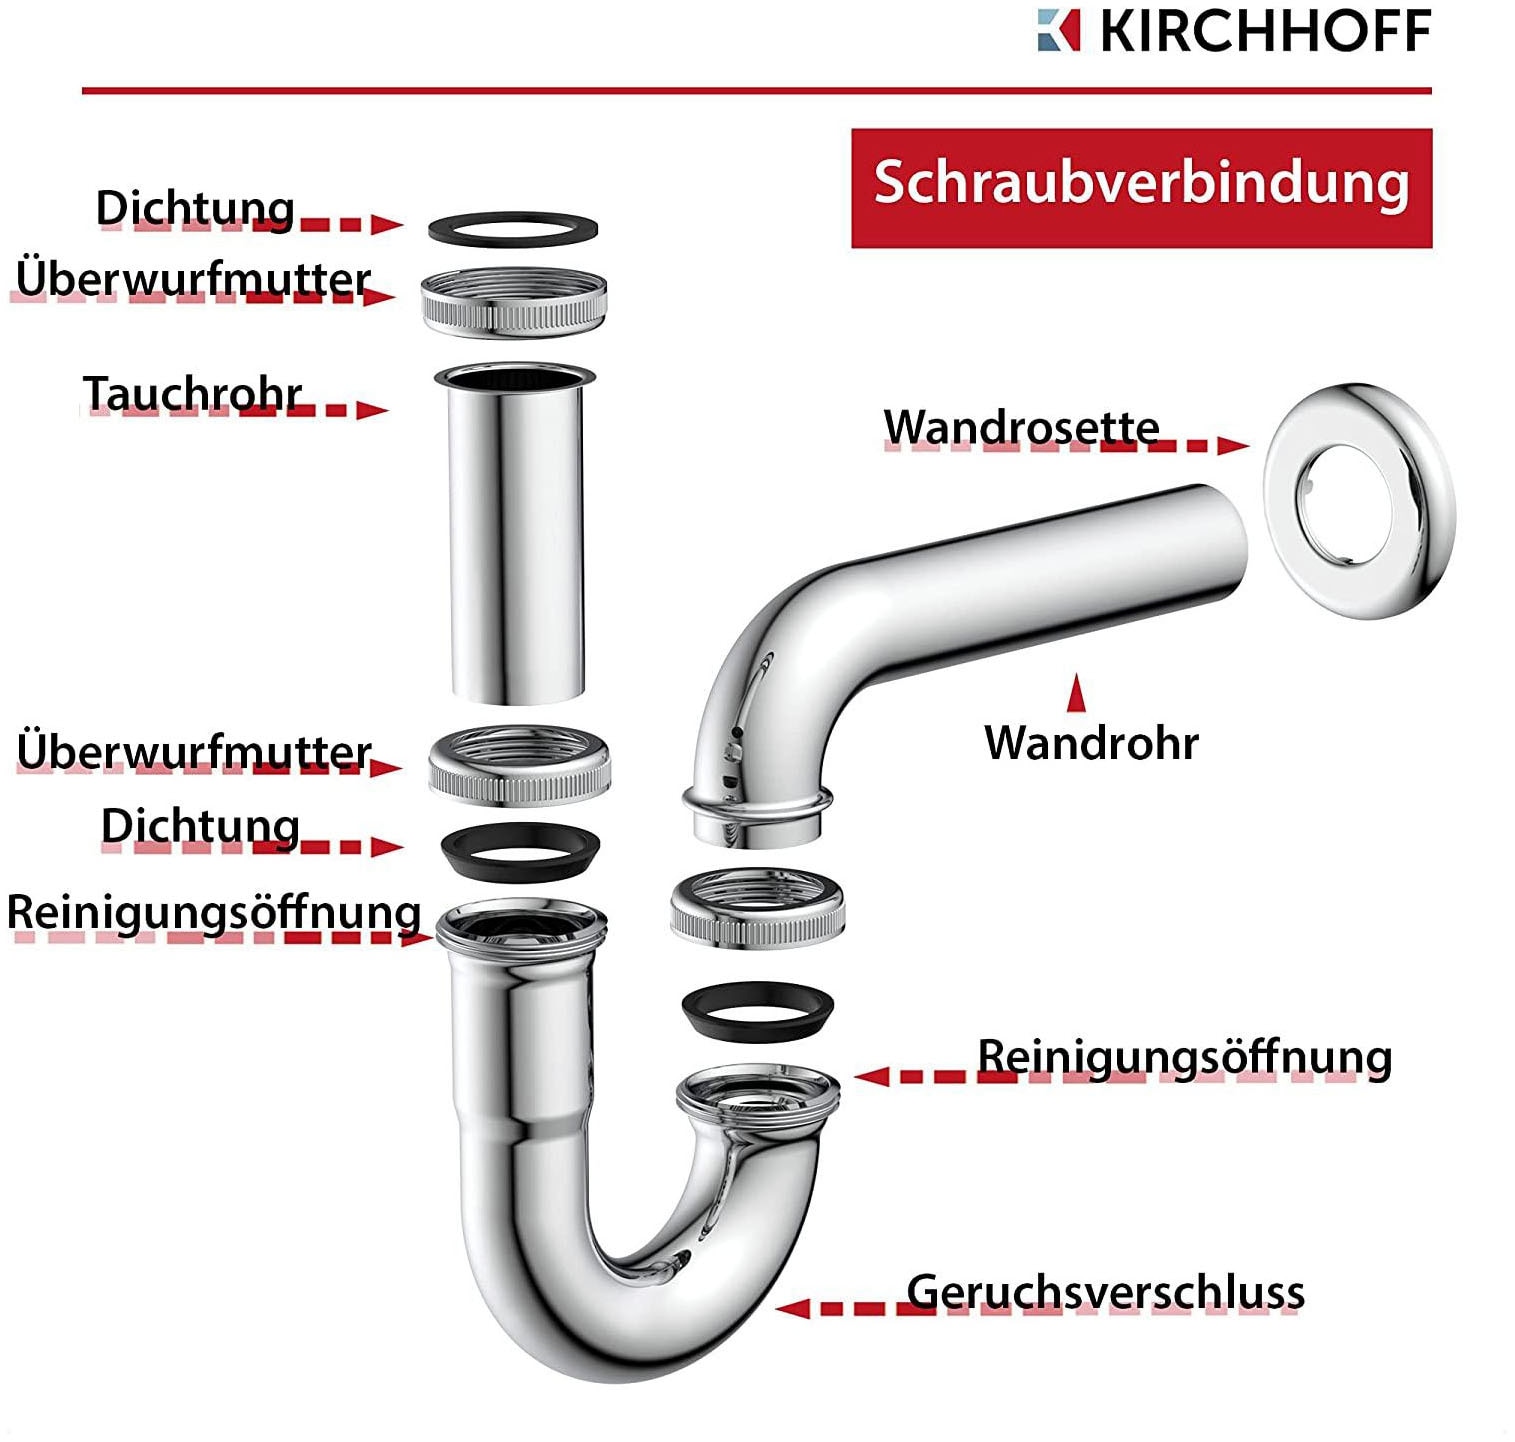 Kirchhoff Siphon, Röhrensiphon, Chrom, 1 1/4" x 32 mm